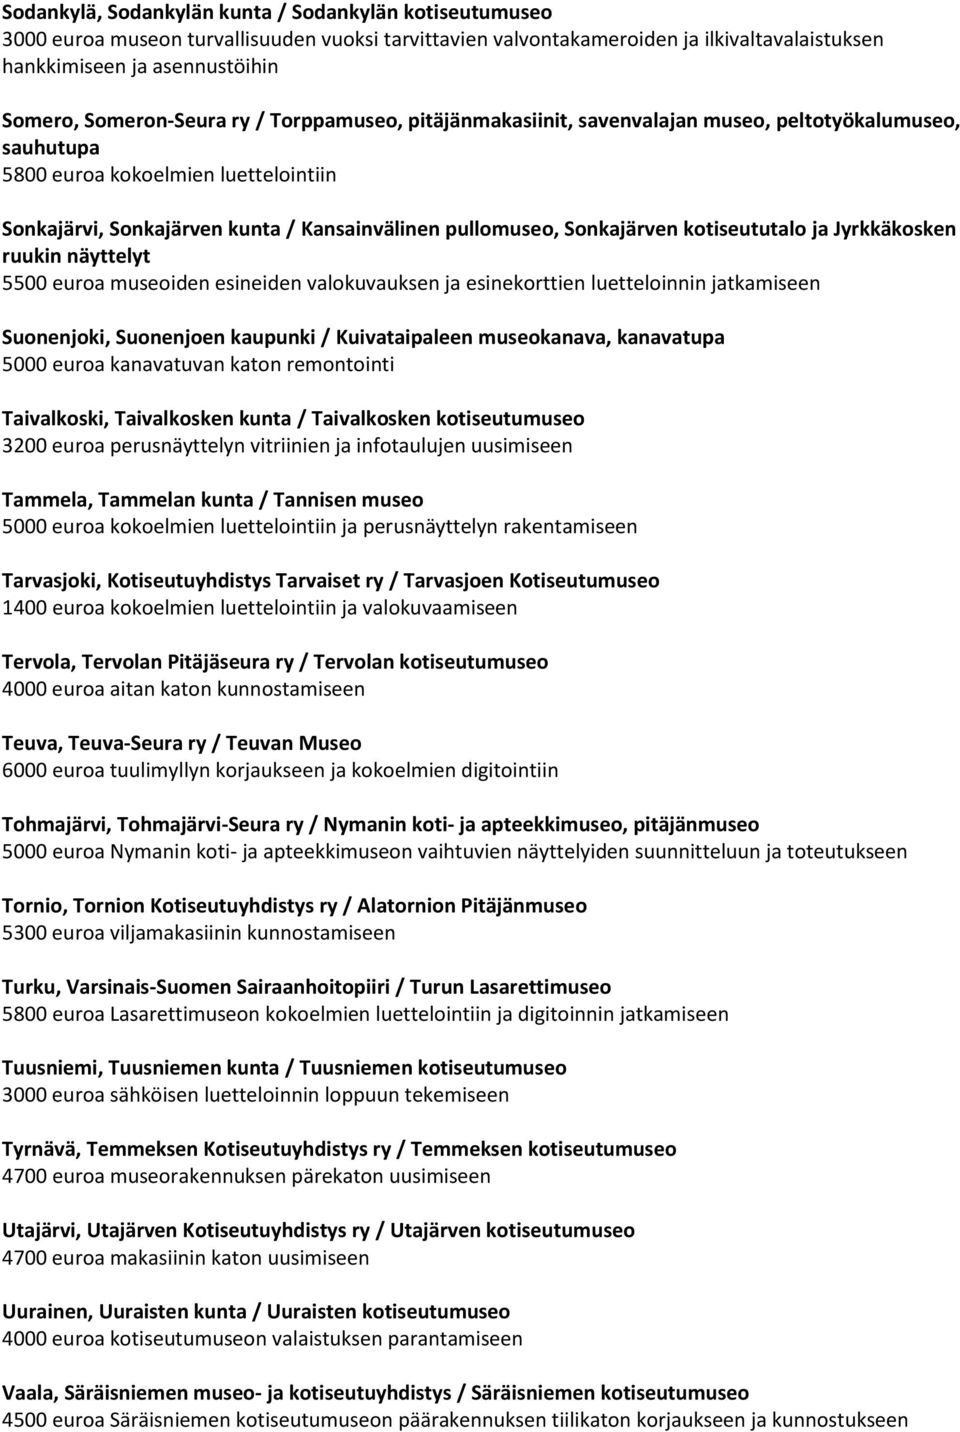 Sonkajärven kotiseututalo ja Jyrkkäkosken ruukin näyttelyt 5500 euroa museoiden esineiden valokuvauksen ja esinekorttien luetteloinnin jatkamiseen Suonenjoki, Suonenjoen kaupunki / Kuivataipaleen